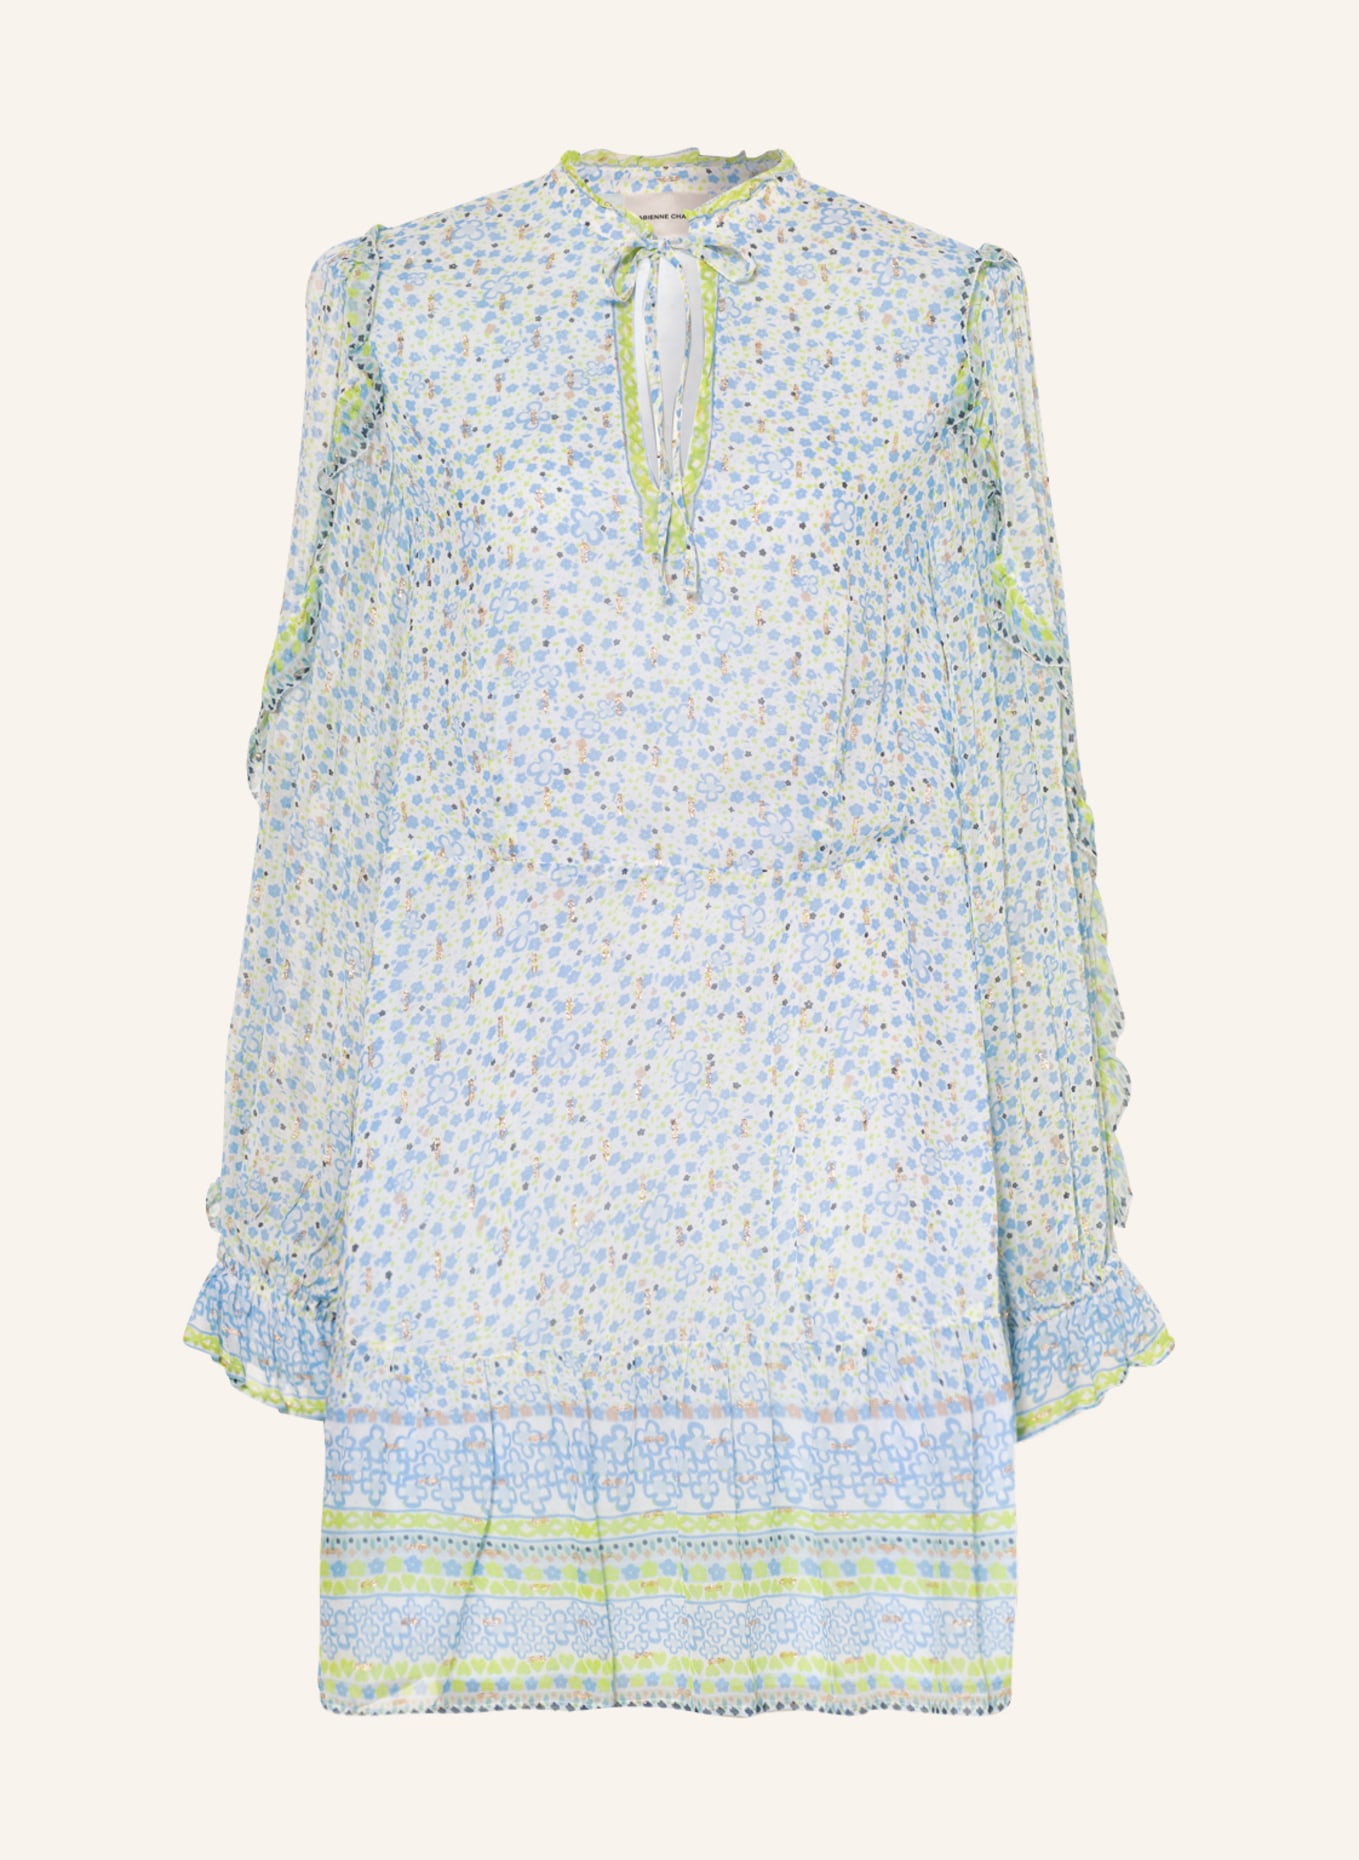 FABIENNE CHAPOT Kleid ADRIENNE mit Glanzgarn und Rüschen, Farbe: WEISS/ HELLBLAU/ HELLGRÜN (Bild 1)